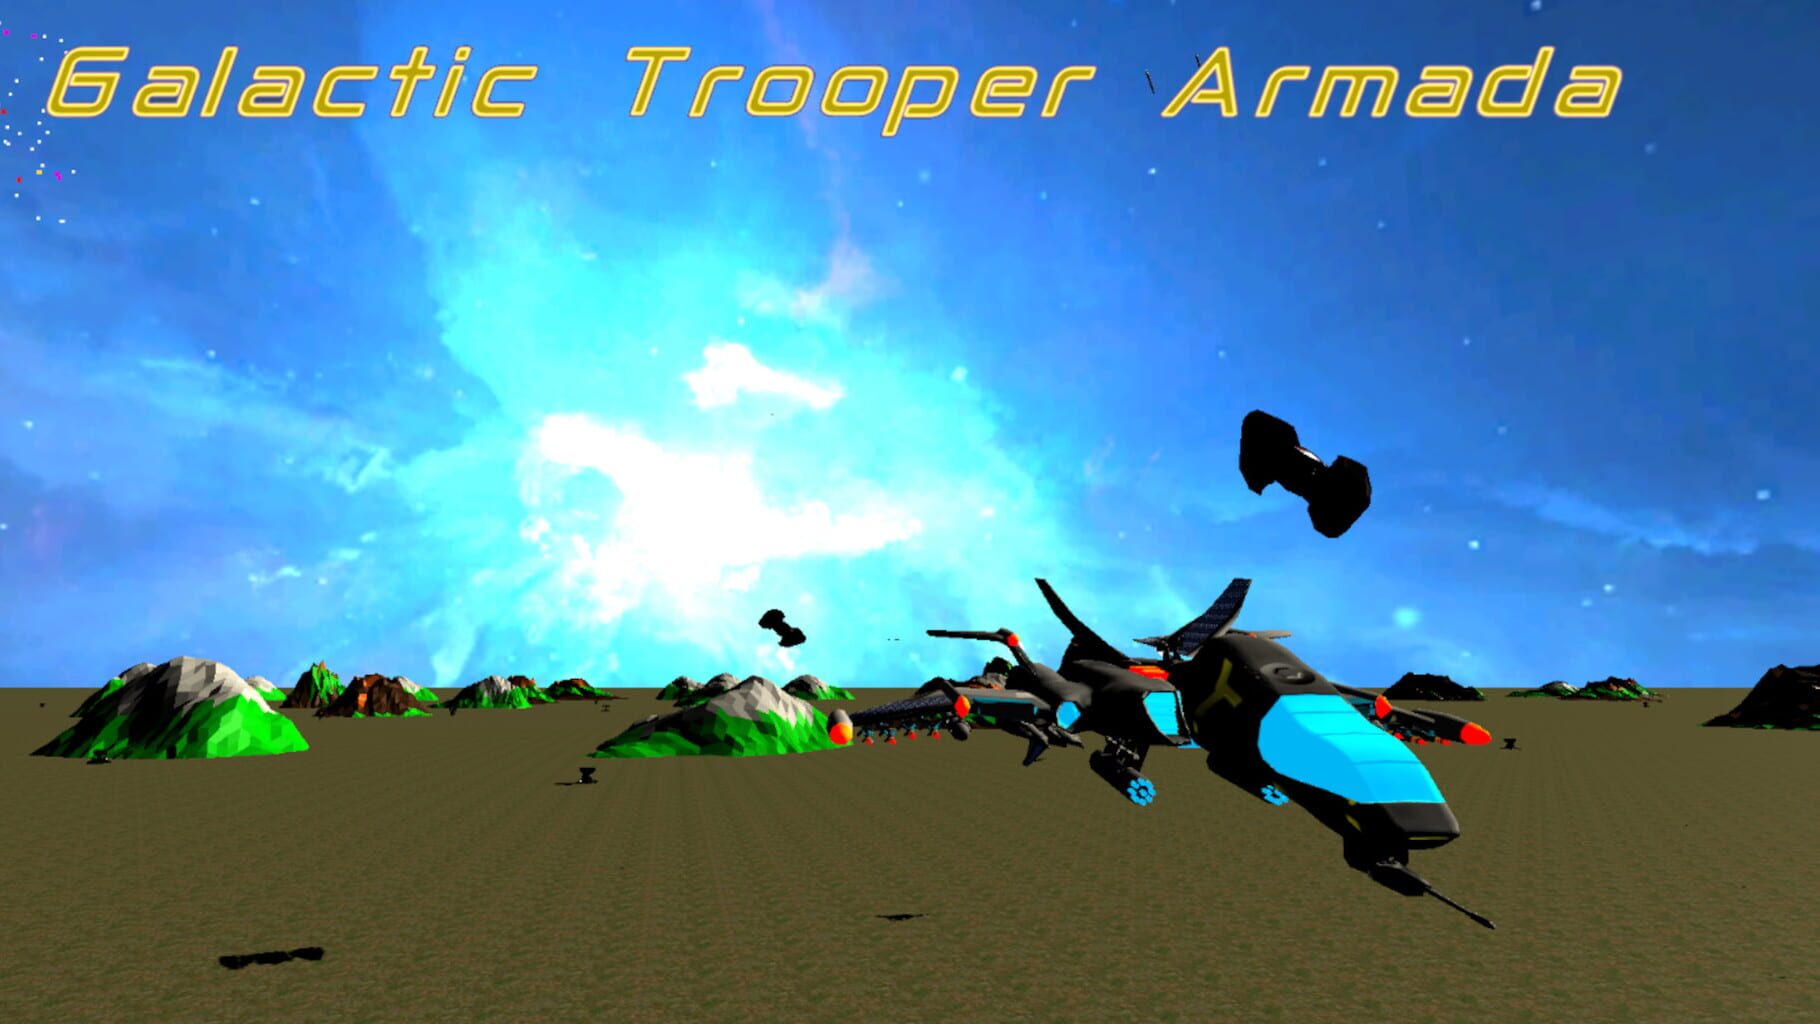 Galactic Trooper Armada artwork